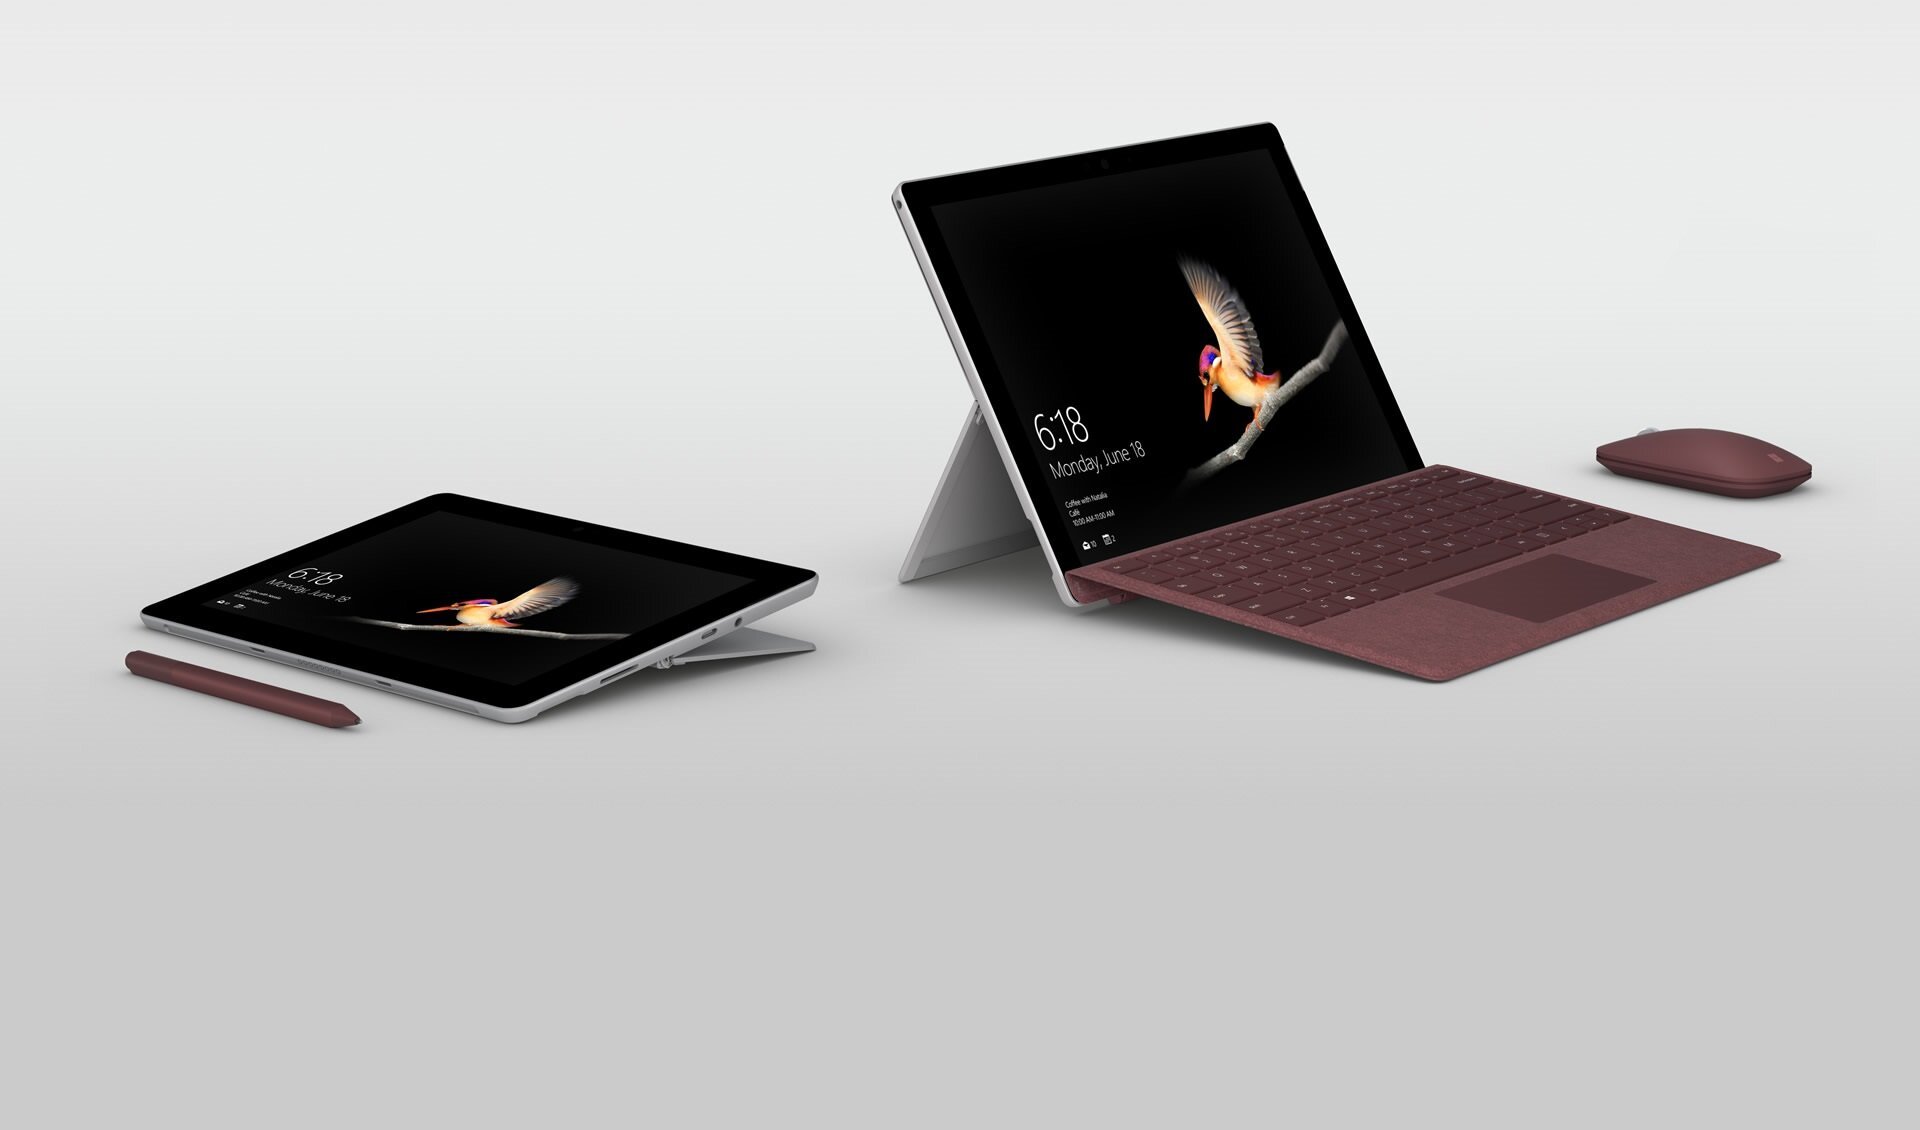 Το Surface Go 2 έχει μεγαλύτερη οθόνη και υποστήριξη LTE